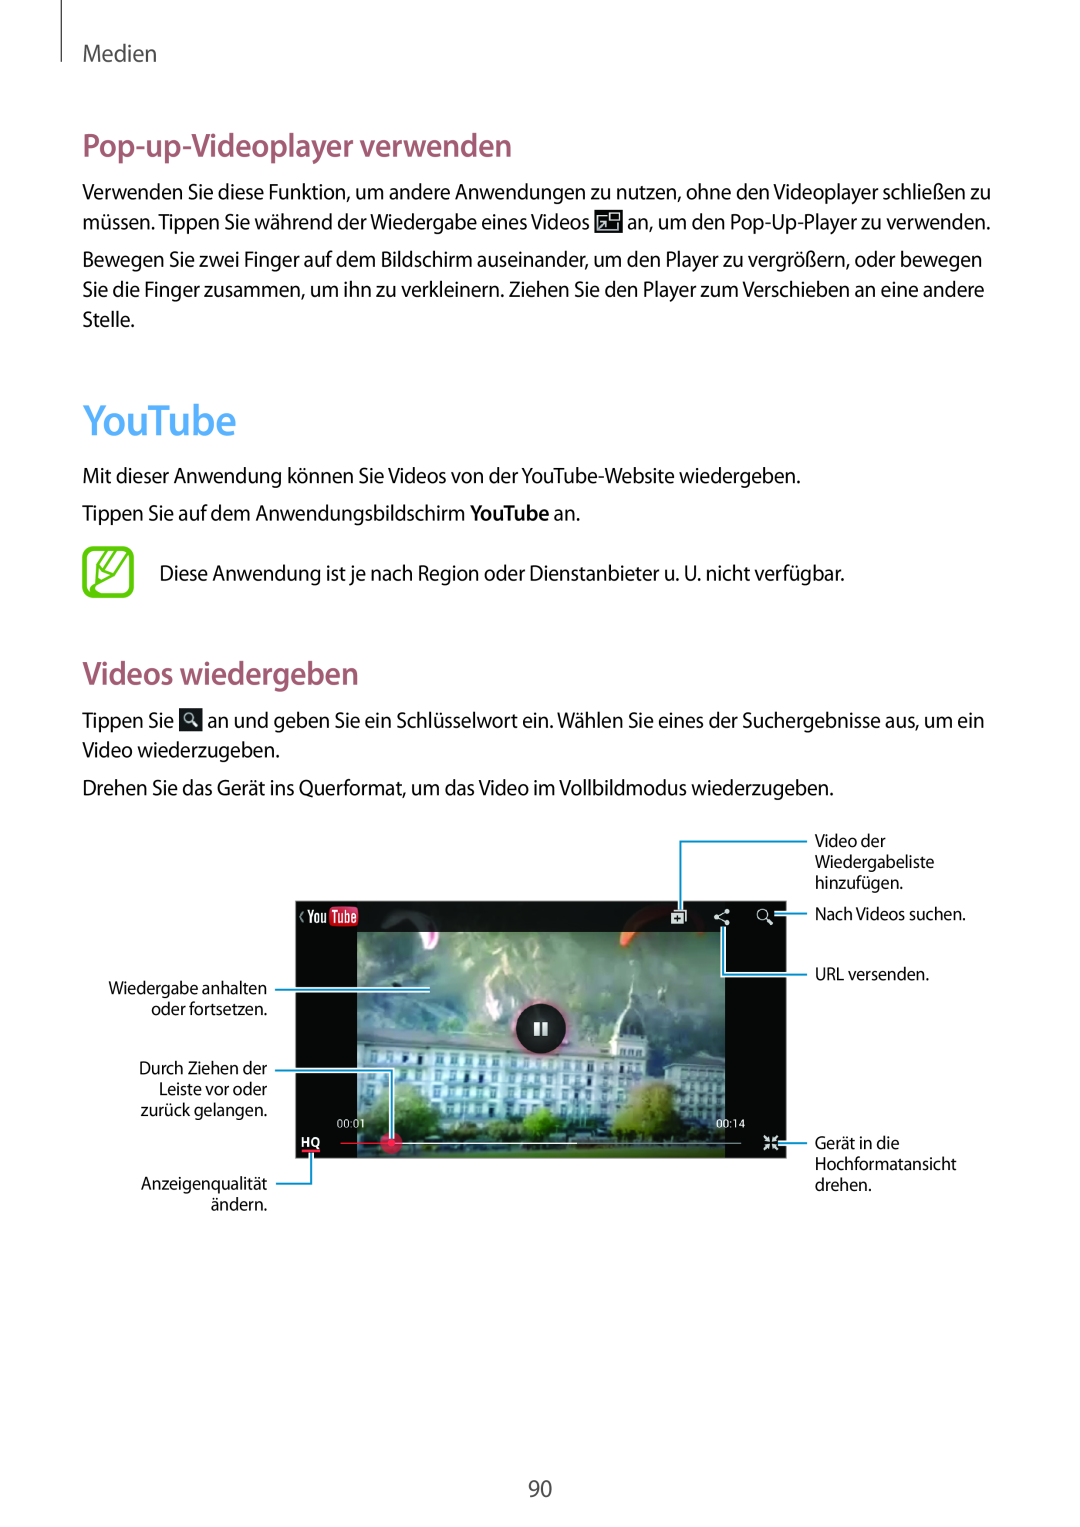 Samsung GT-N7100RWDITV manual YouTube, Pop-up-Videoplayer verwenden, Videos wiedergeben, Medien, Anzeigenqualität ändern 